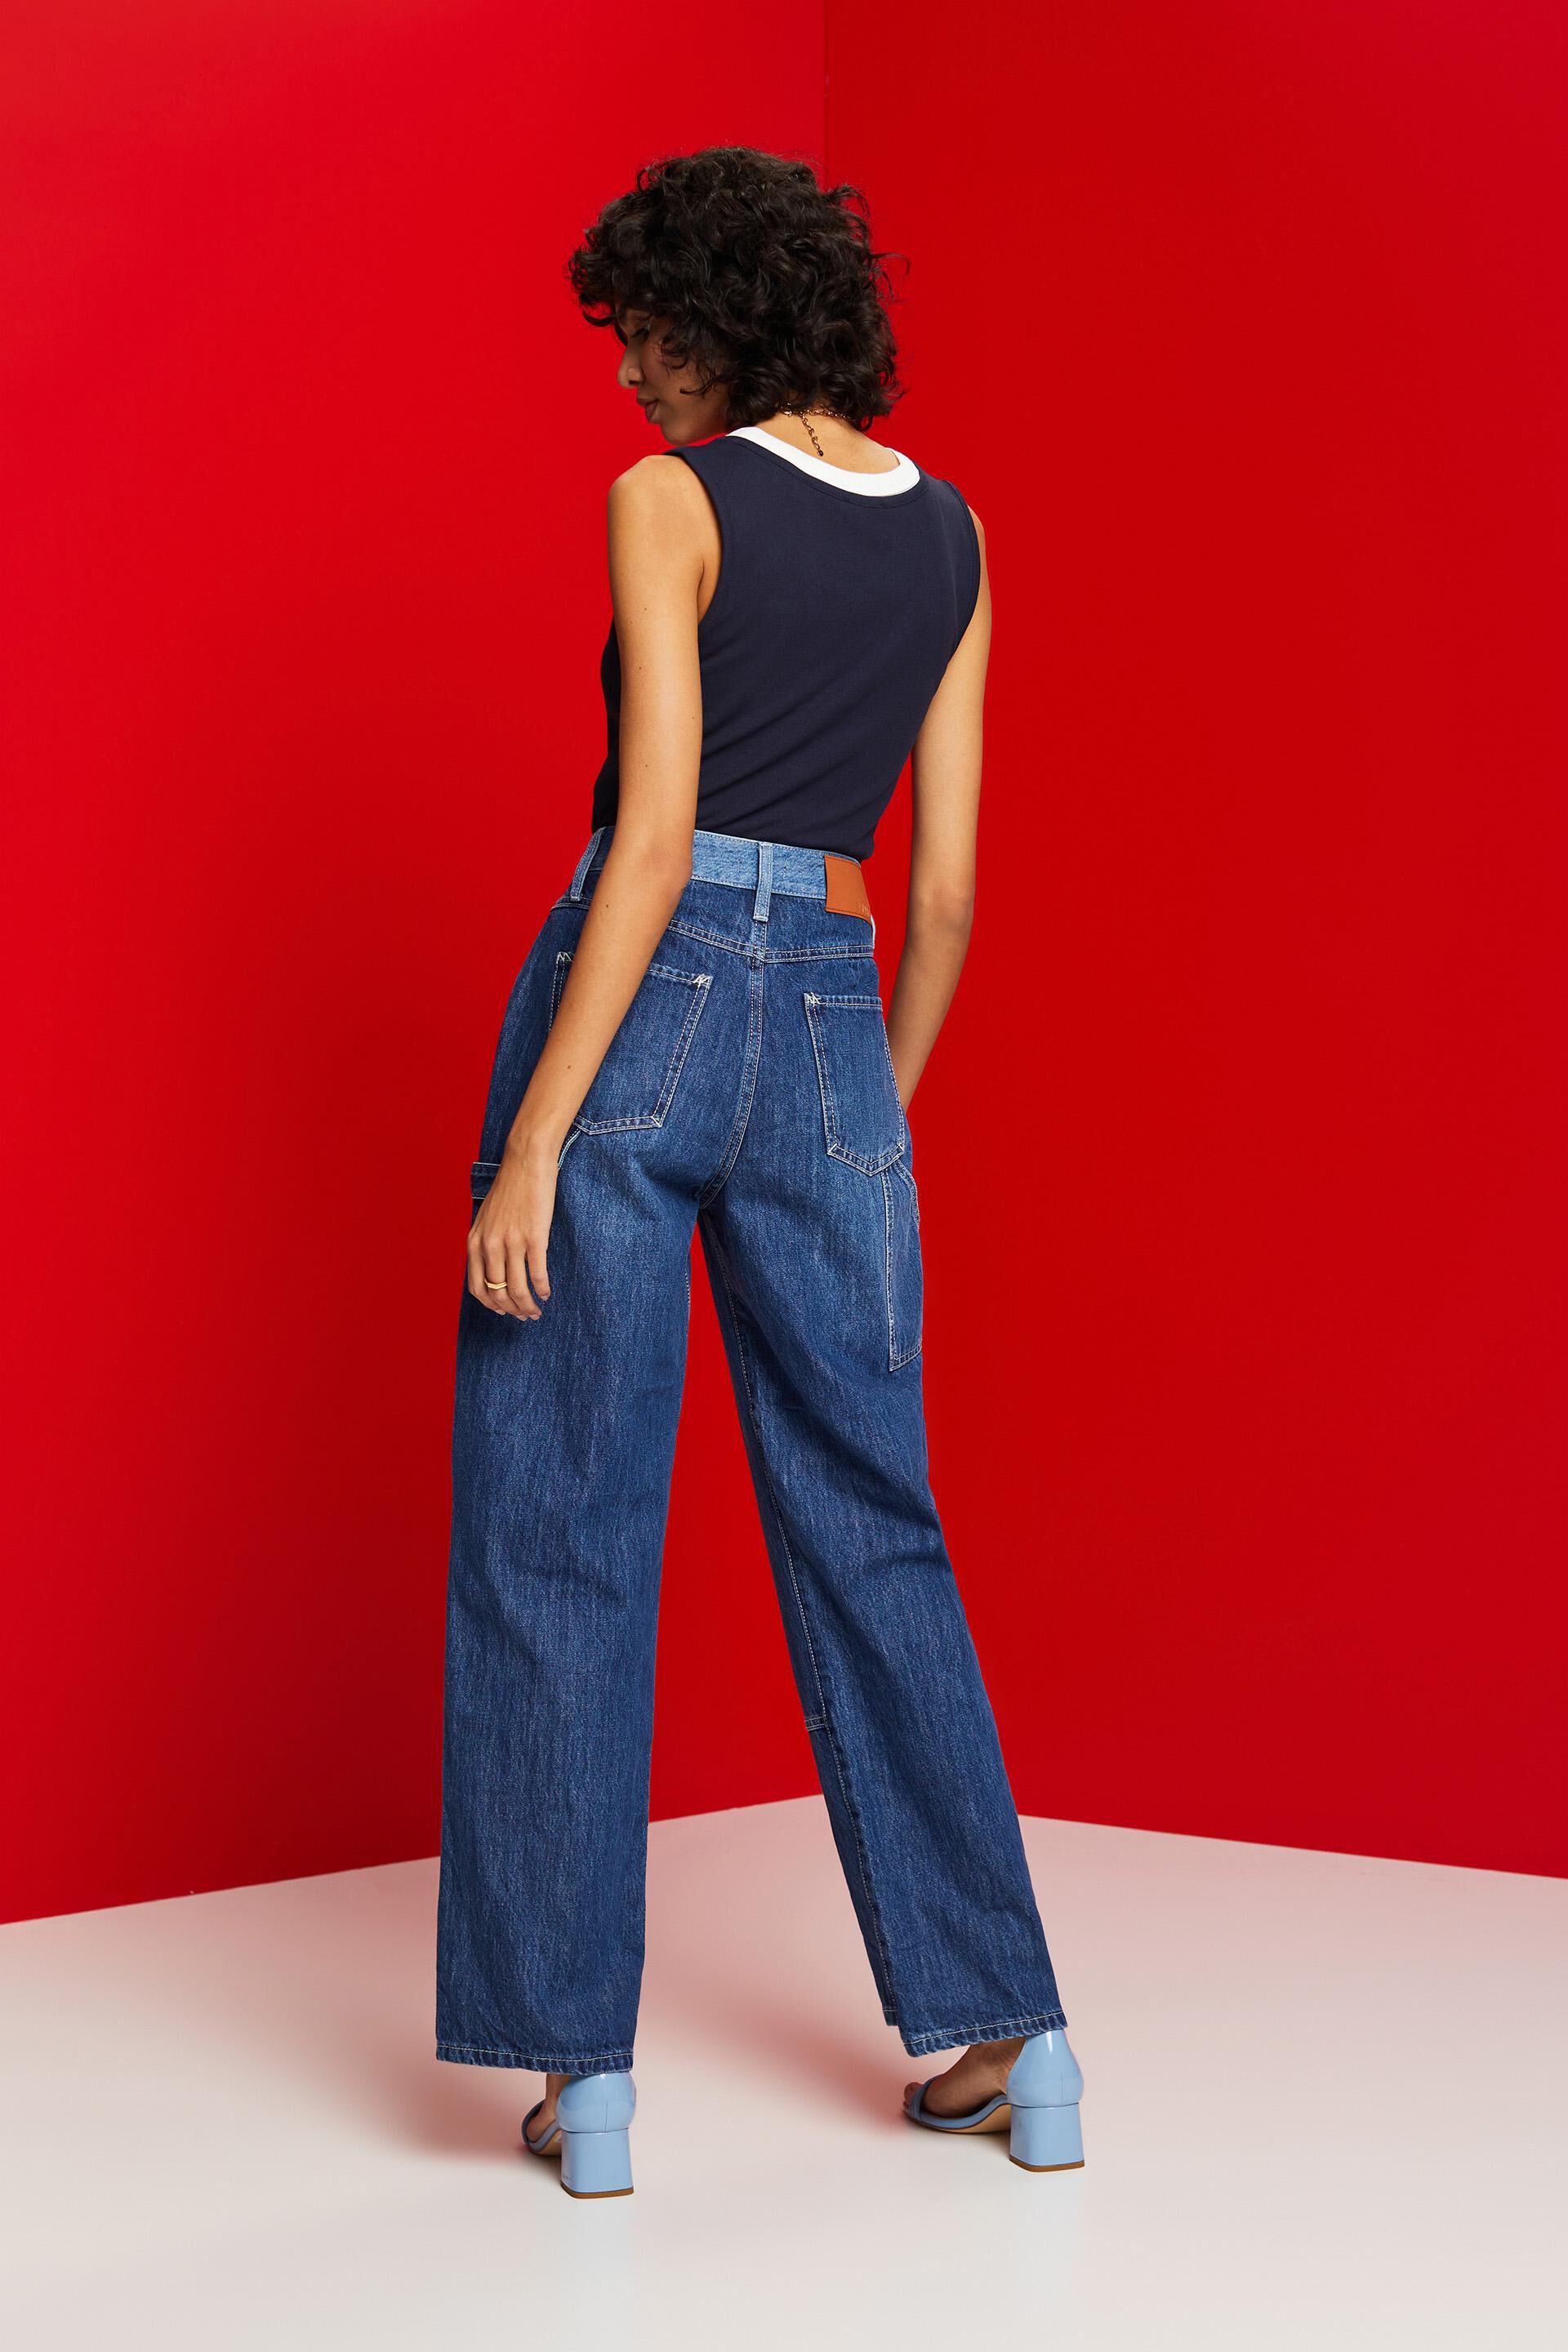 Esprit Damen Asymmetrische Jeans Stil weitem 90er der Bein im mit